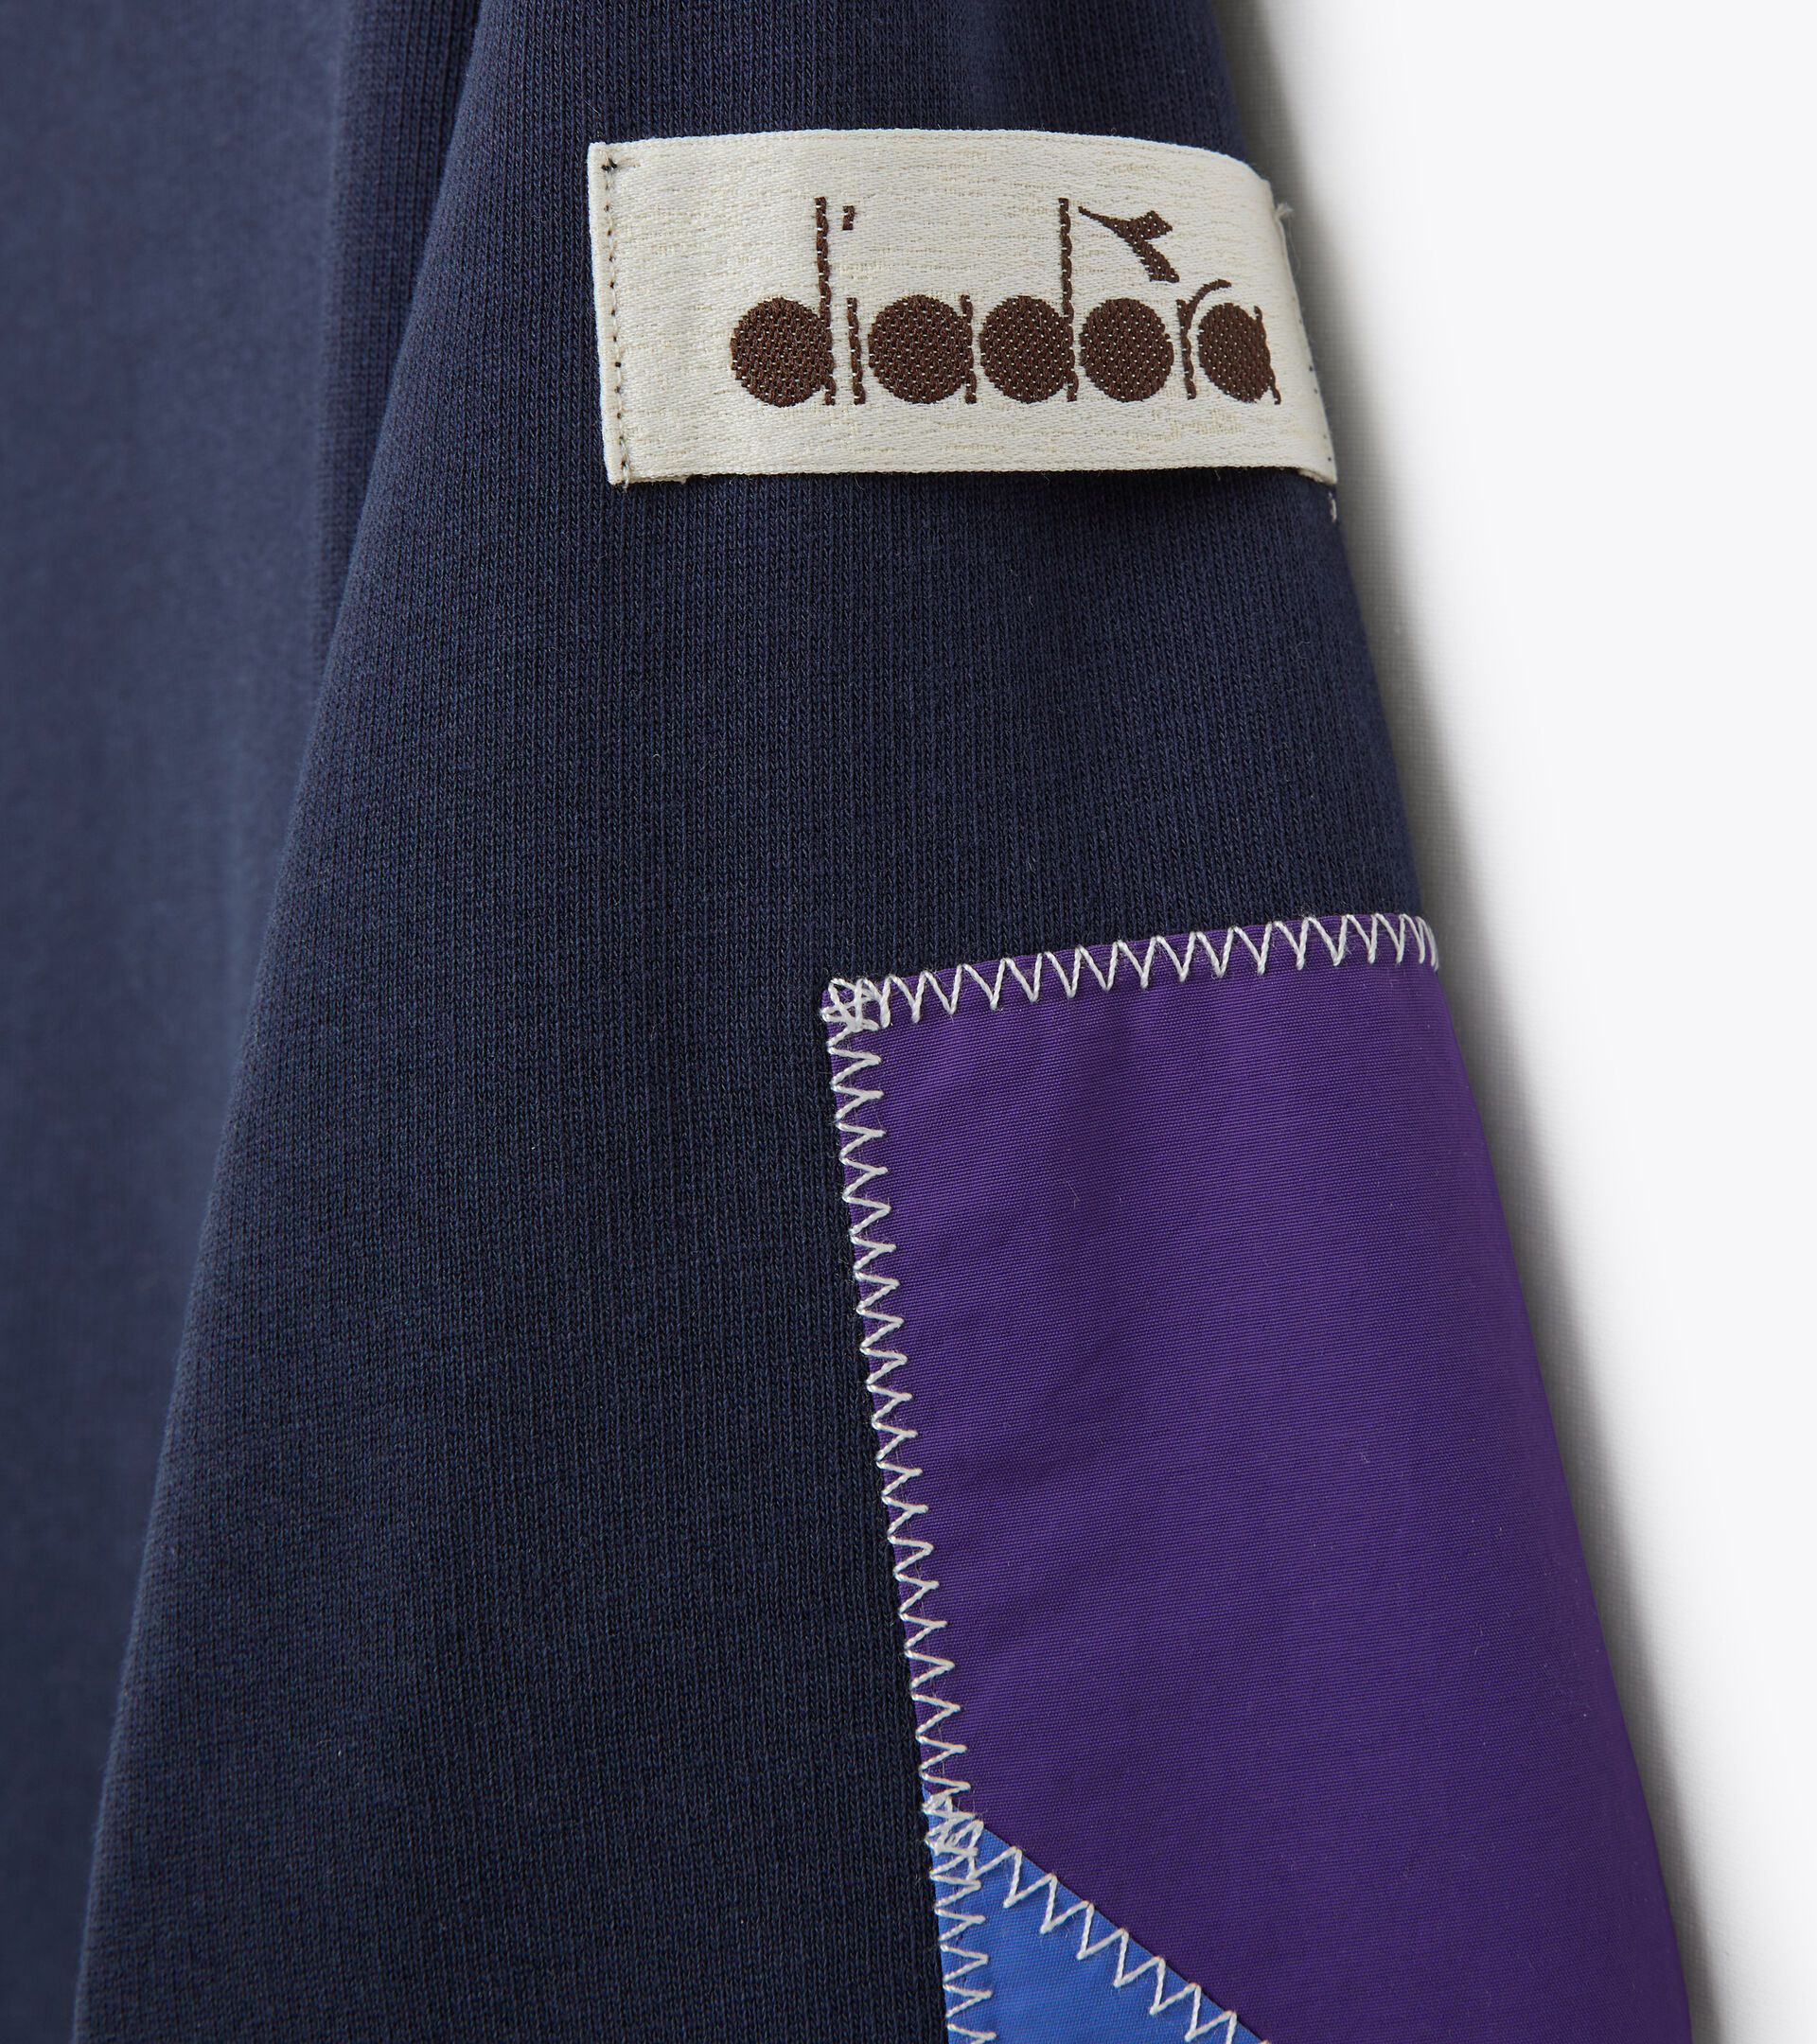 Sweatshirt Made in Italy 2030 - Damen L. SWEATSHIRT CREW 2030 SCHWARZ SCHWERTLILIE - Diadora